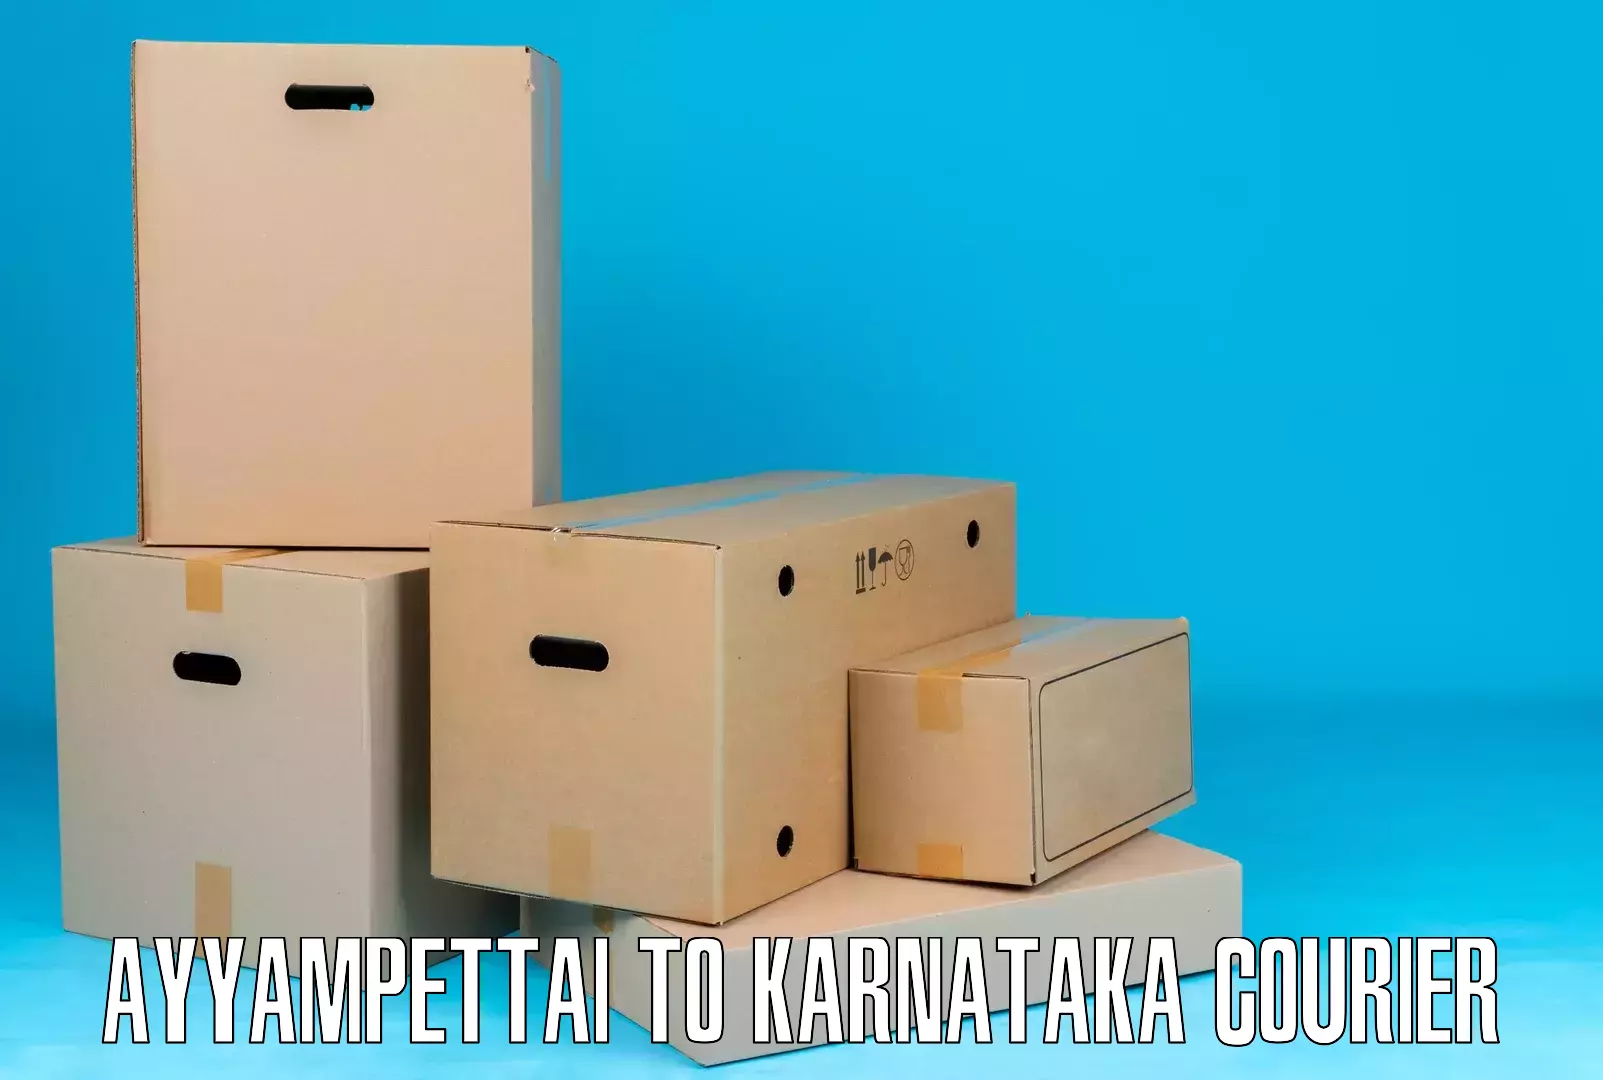 Domestic courier Ayyampettai to Kanjarakatte